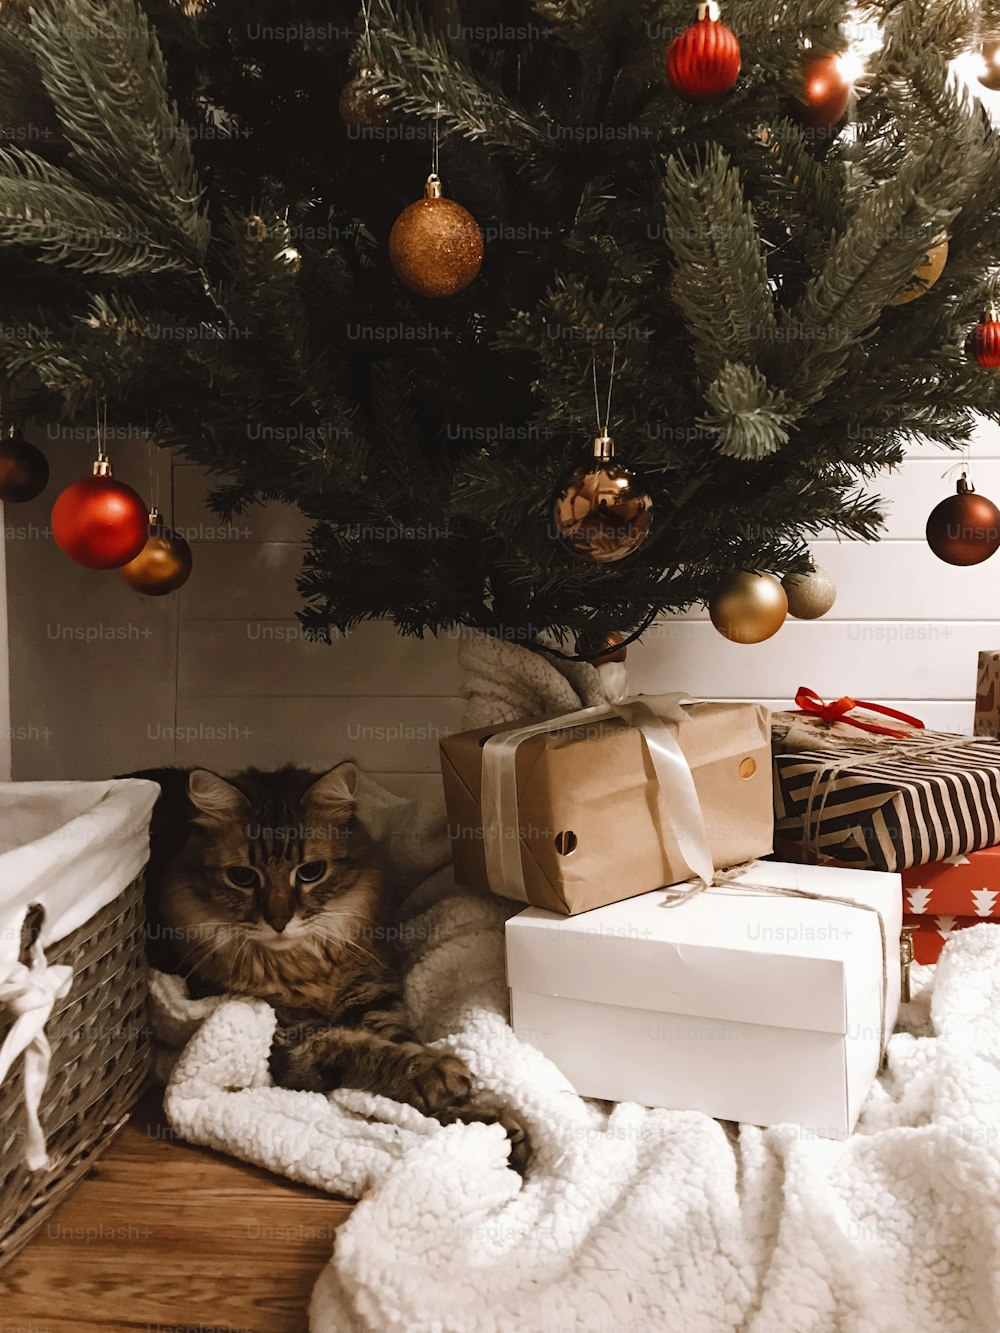 Süße Tabby-Katze sitzt mit Geschenken unter Weihnachtsbaum mit roten und goldenen Kugeln im festlichen Raum. Haustier und Urlaub. Frohe Weihnachten